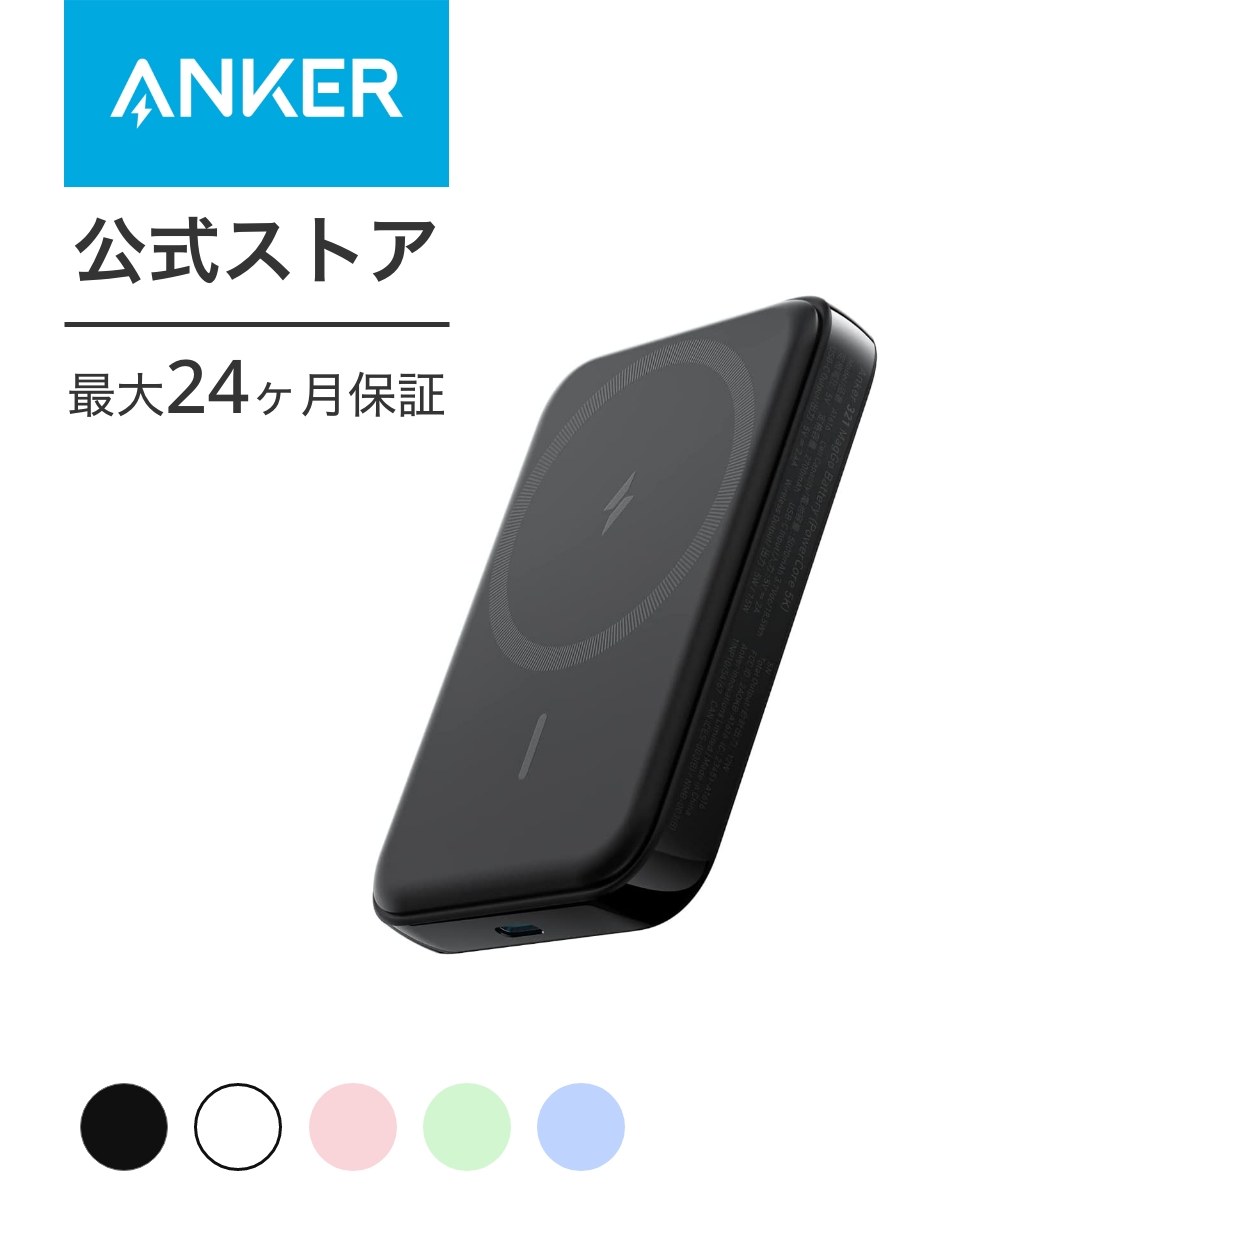 Anker 321 MagGo Battery (PowerCore 5000) (マグネット式ワイヤレス充電対応 5000mAh コンパクト モバイルバッテリー)iPhone 14   13   12 シリーズ専用